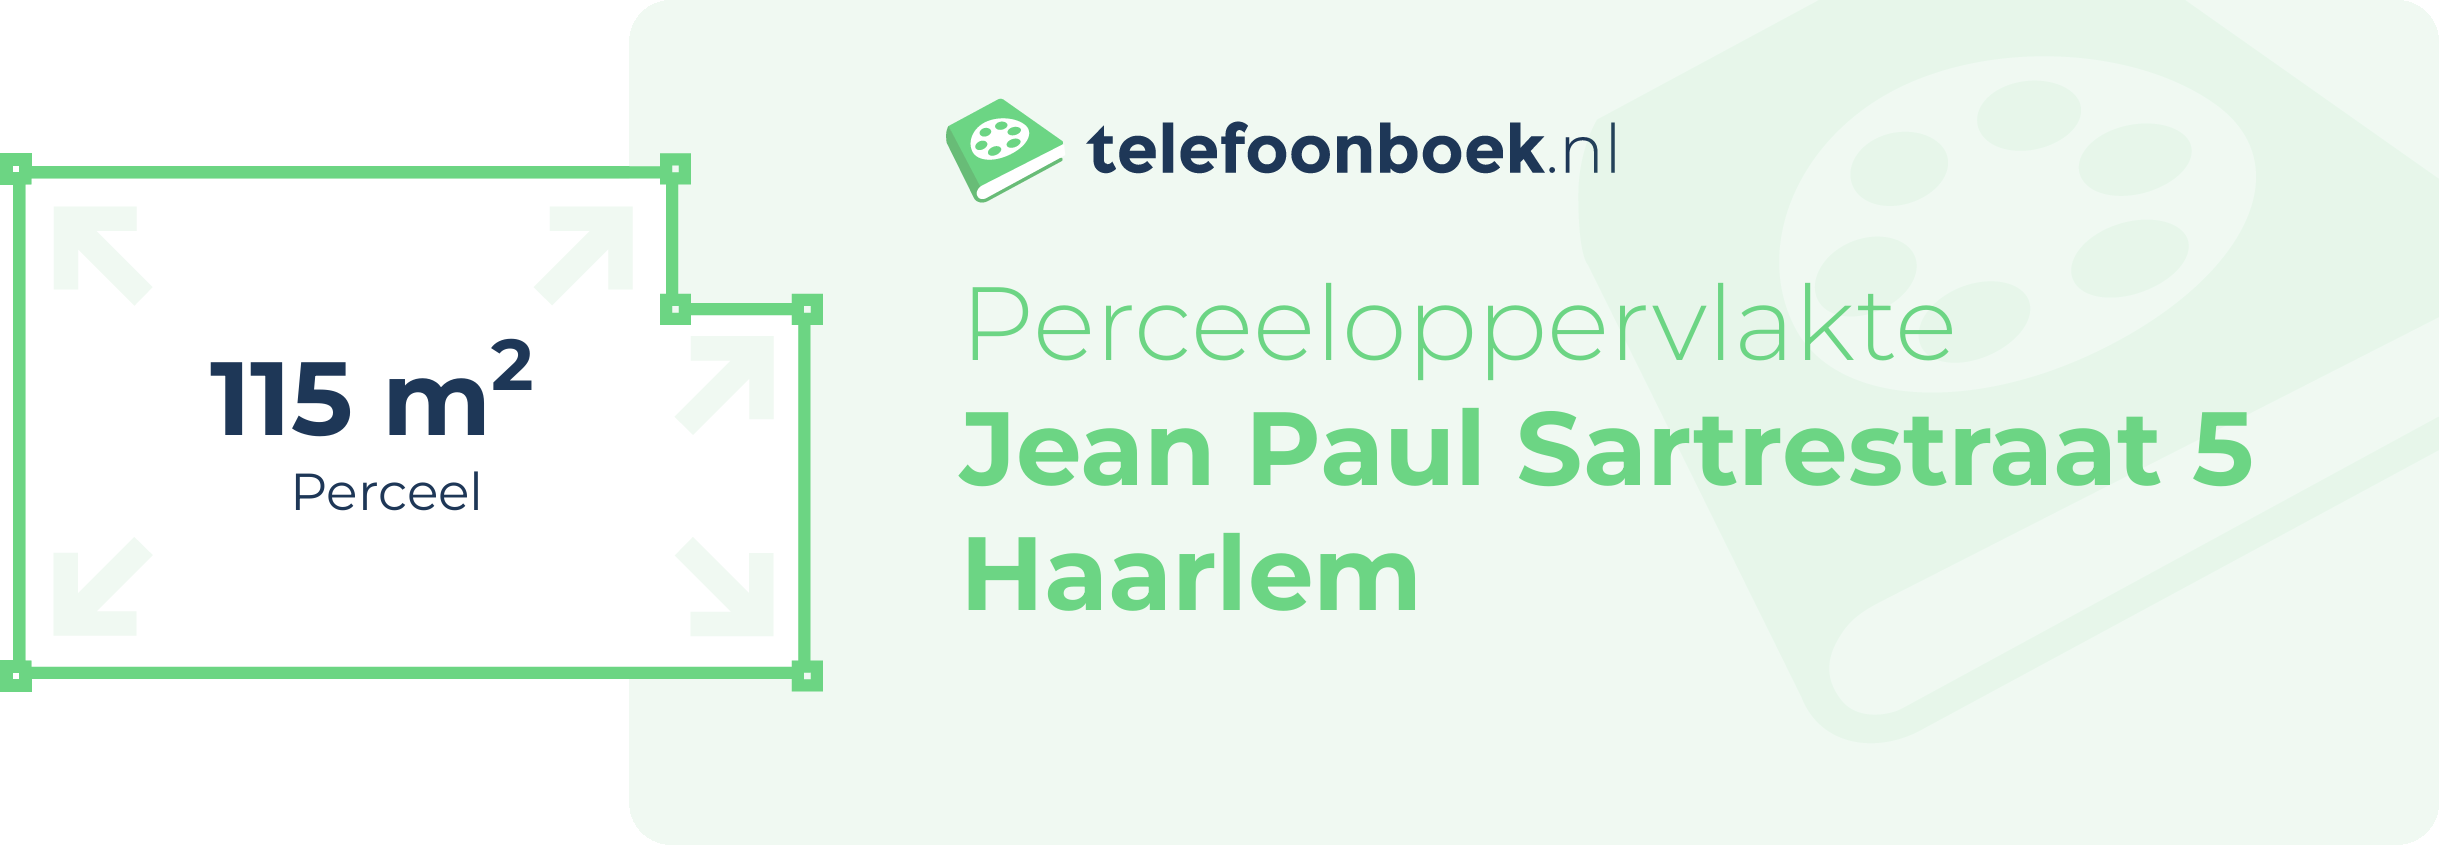 Perceeloppervlakte Jean Paul Sartrestraat 5 Haarlem